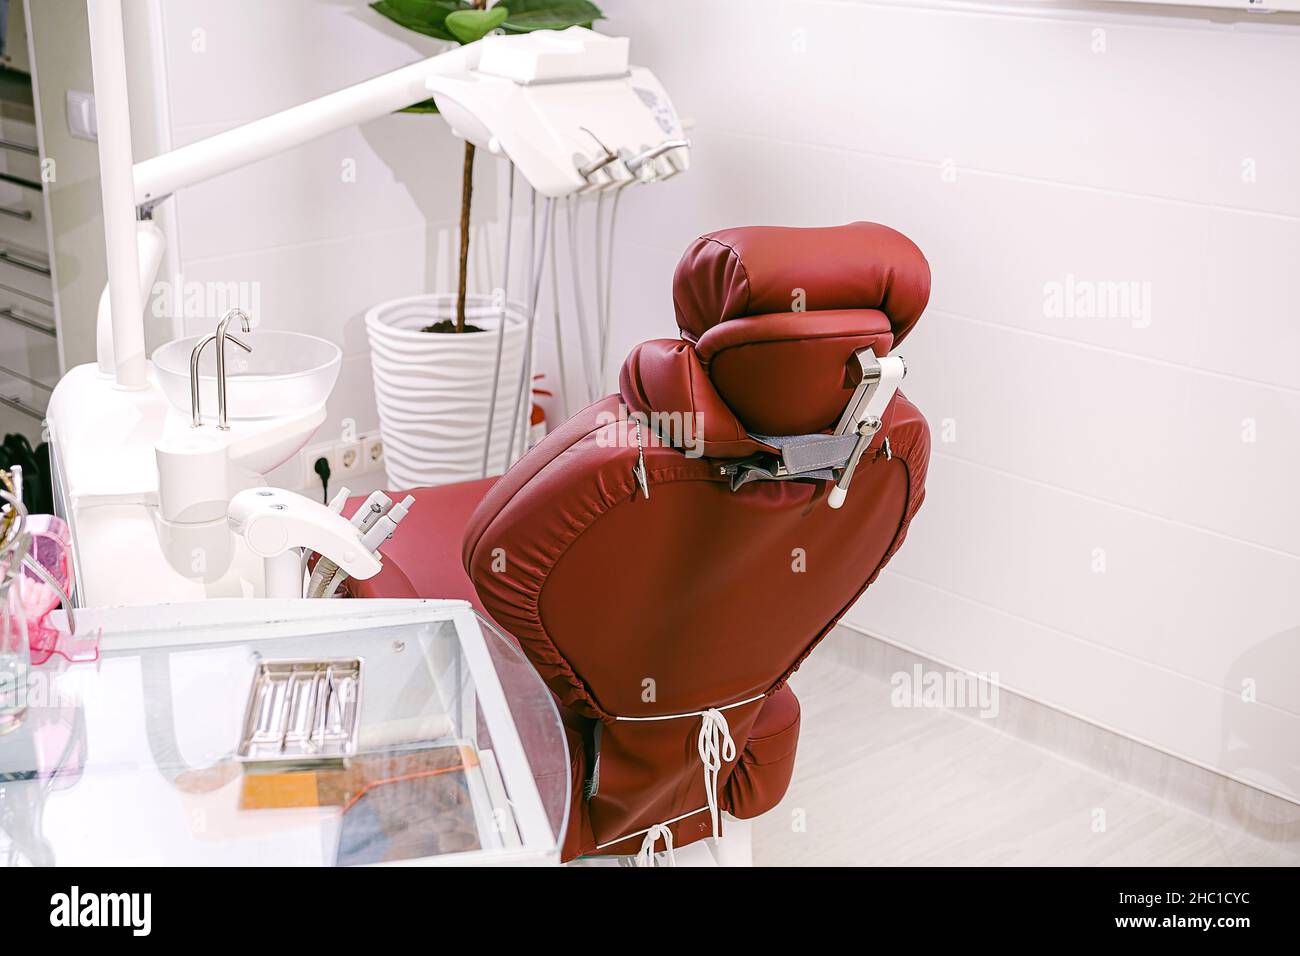 Foto eines Stomatologieschranks mit einem Stuhl, zahnärztlichen Instrumenten auf dem Arbeitstisch und einem Blumentopf. Stockfoto